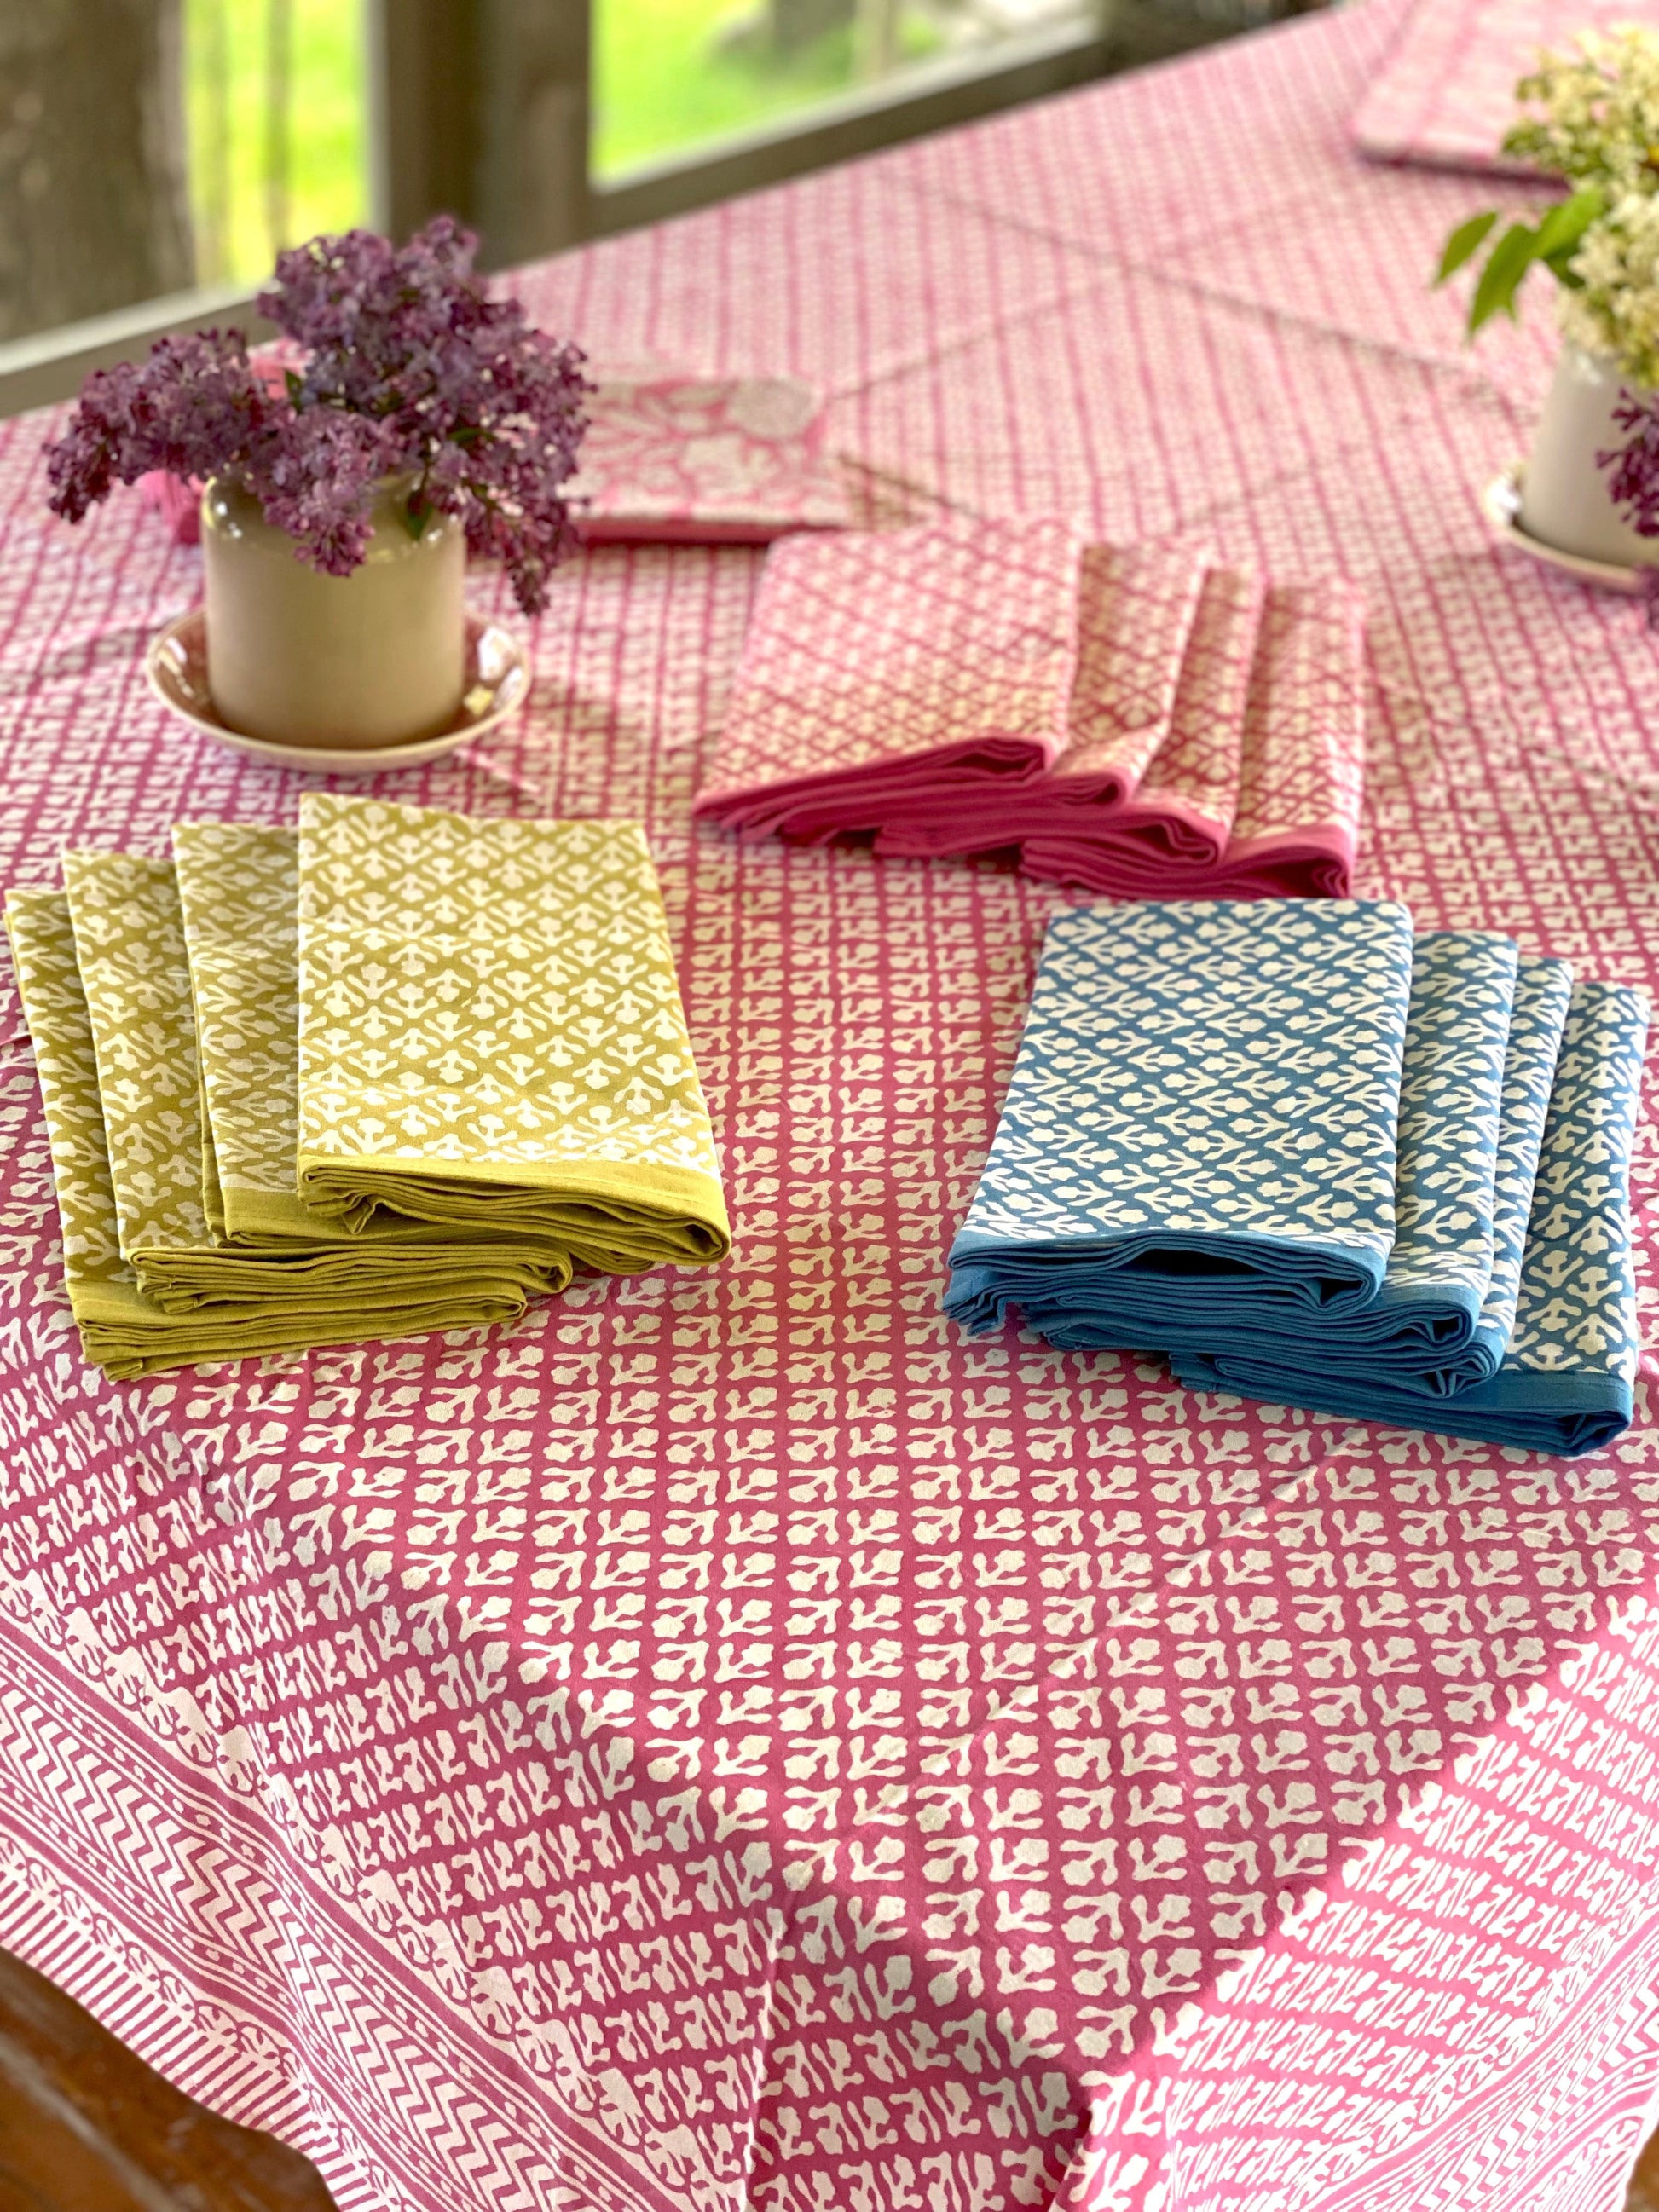 Block Print Cotton Napkins | Pink - Imli.lifestyle